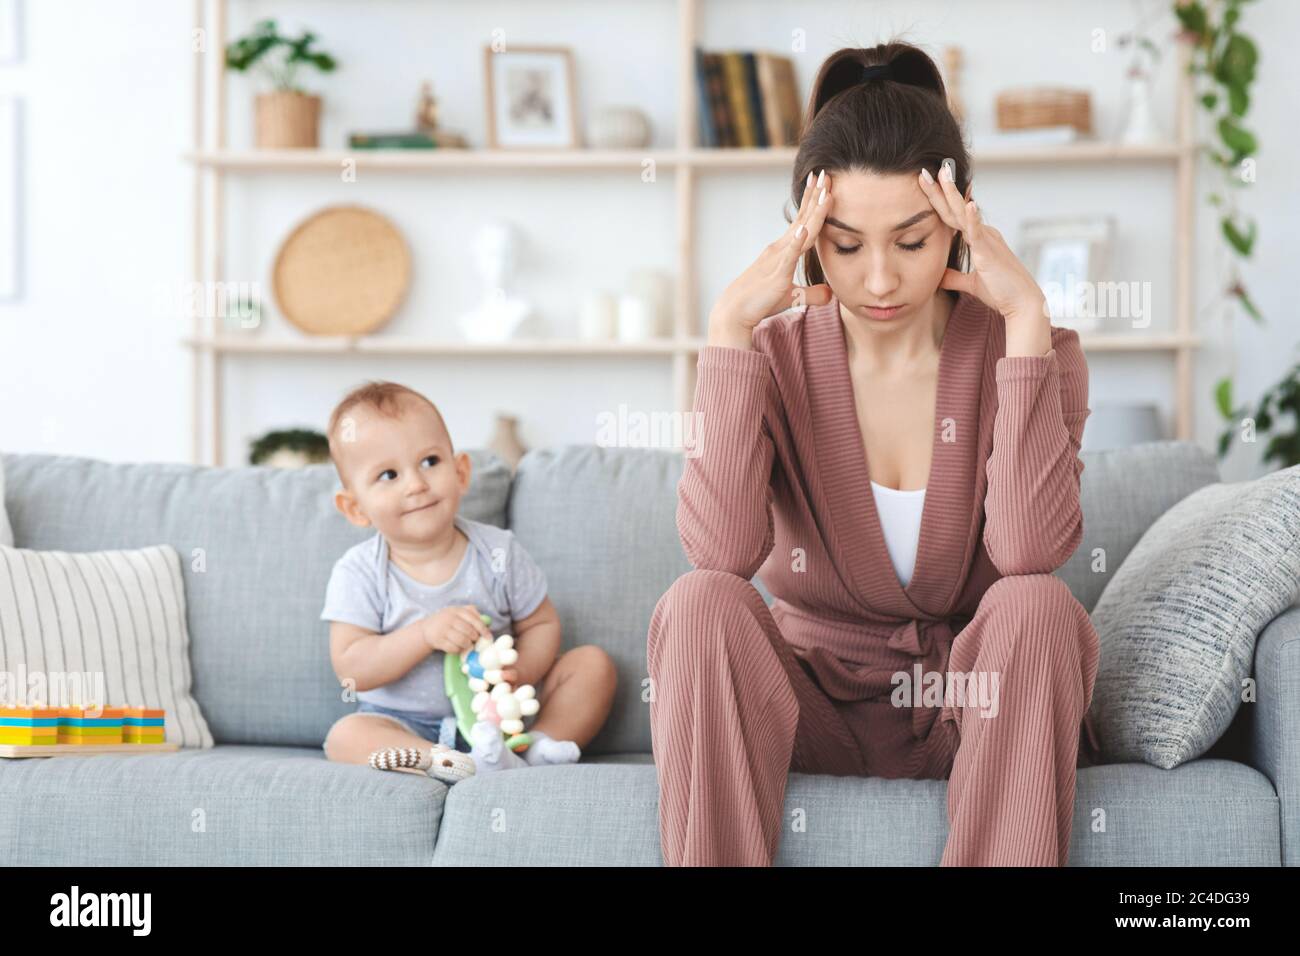 Stress Der Mutterschaft. Deprimiert junge Frau mit kleinen Baby zu Hause sitzen Stockfoto